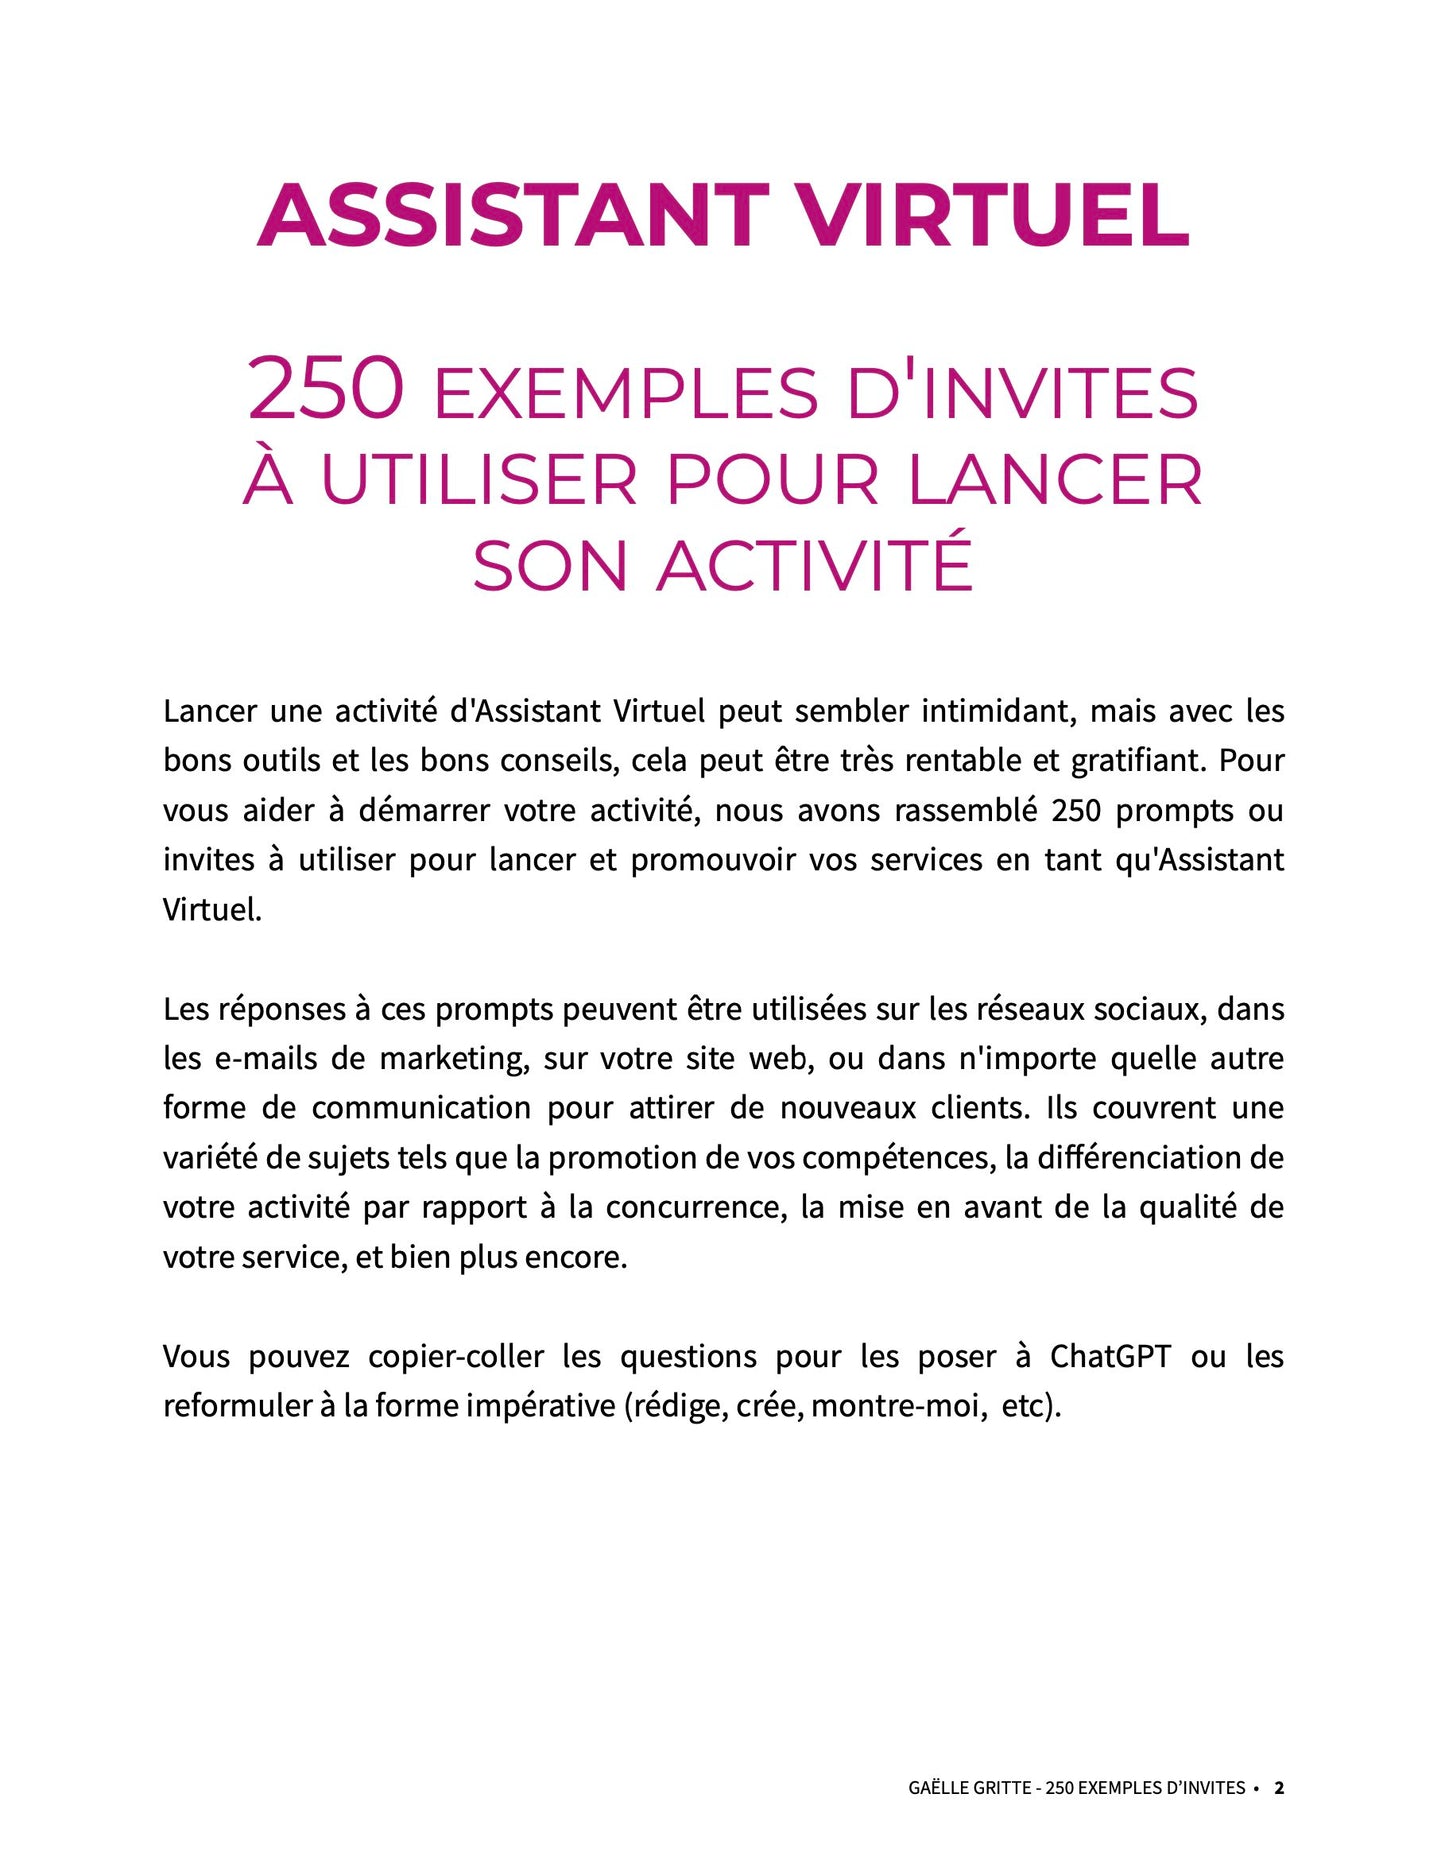 Pack "Devenez Assistant Virtuel avec ChatGPT"